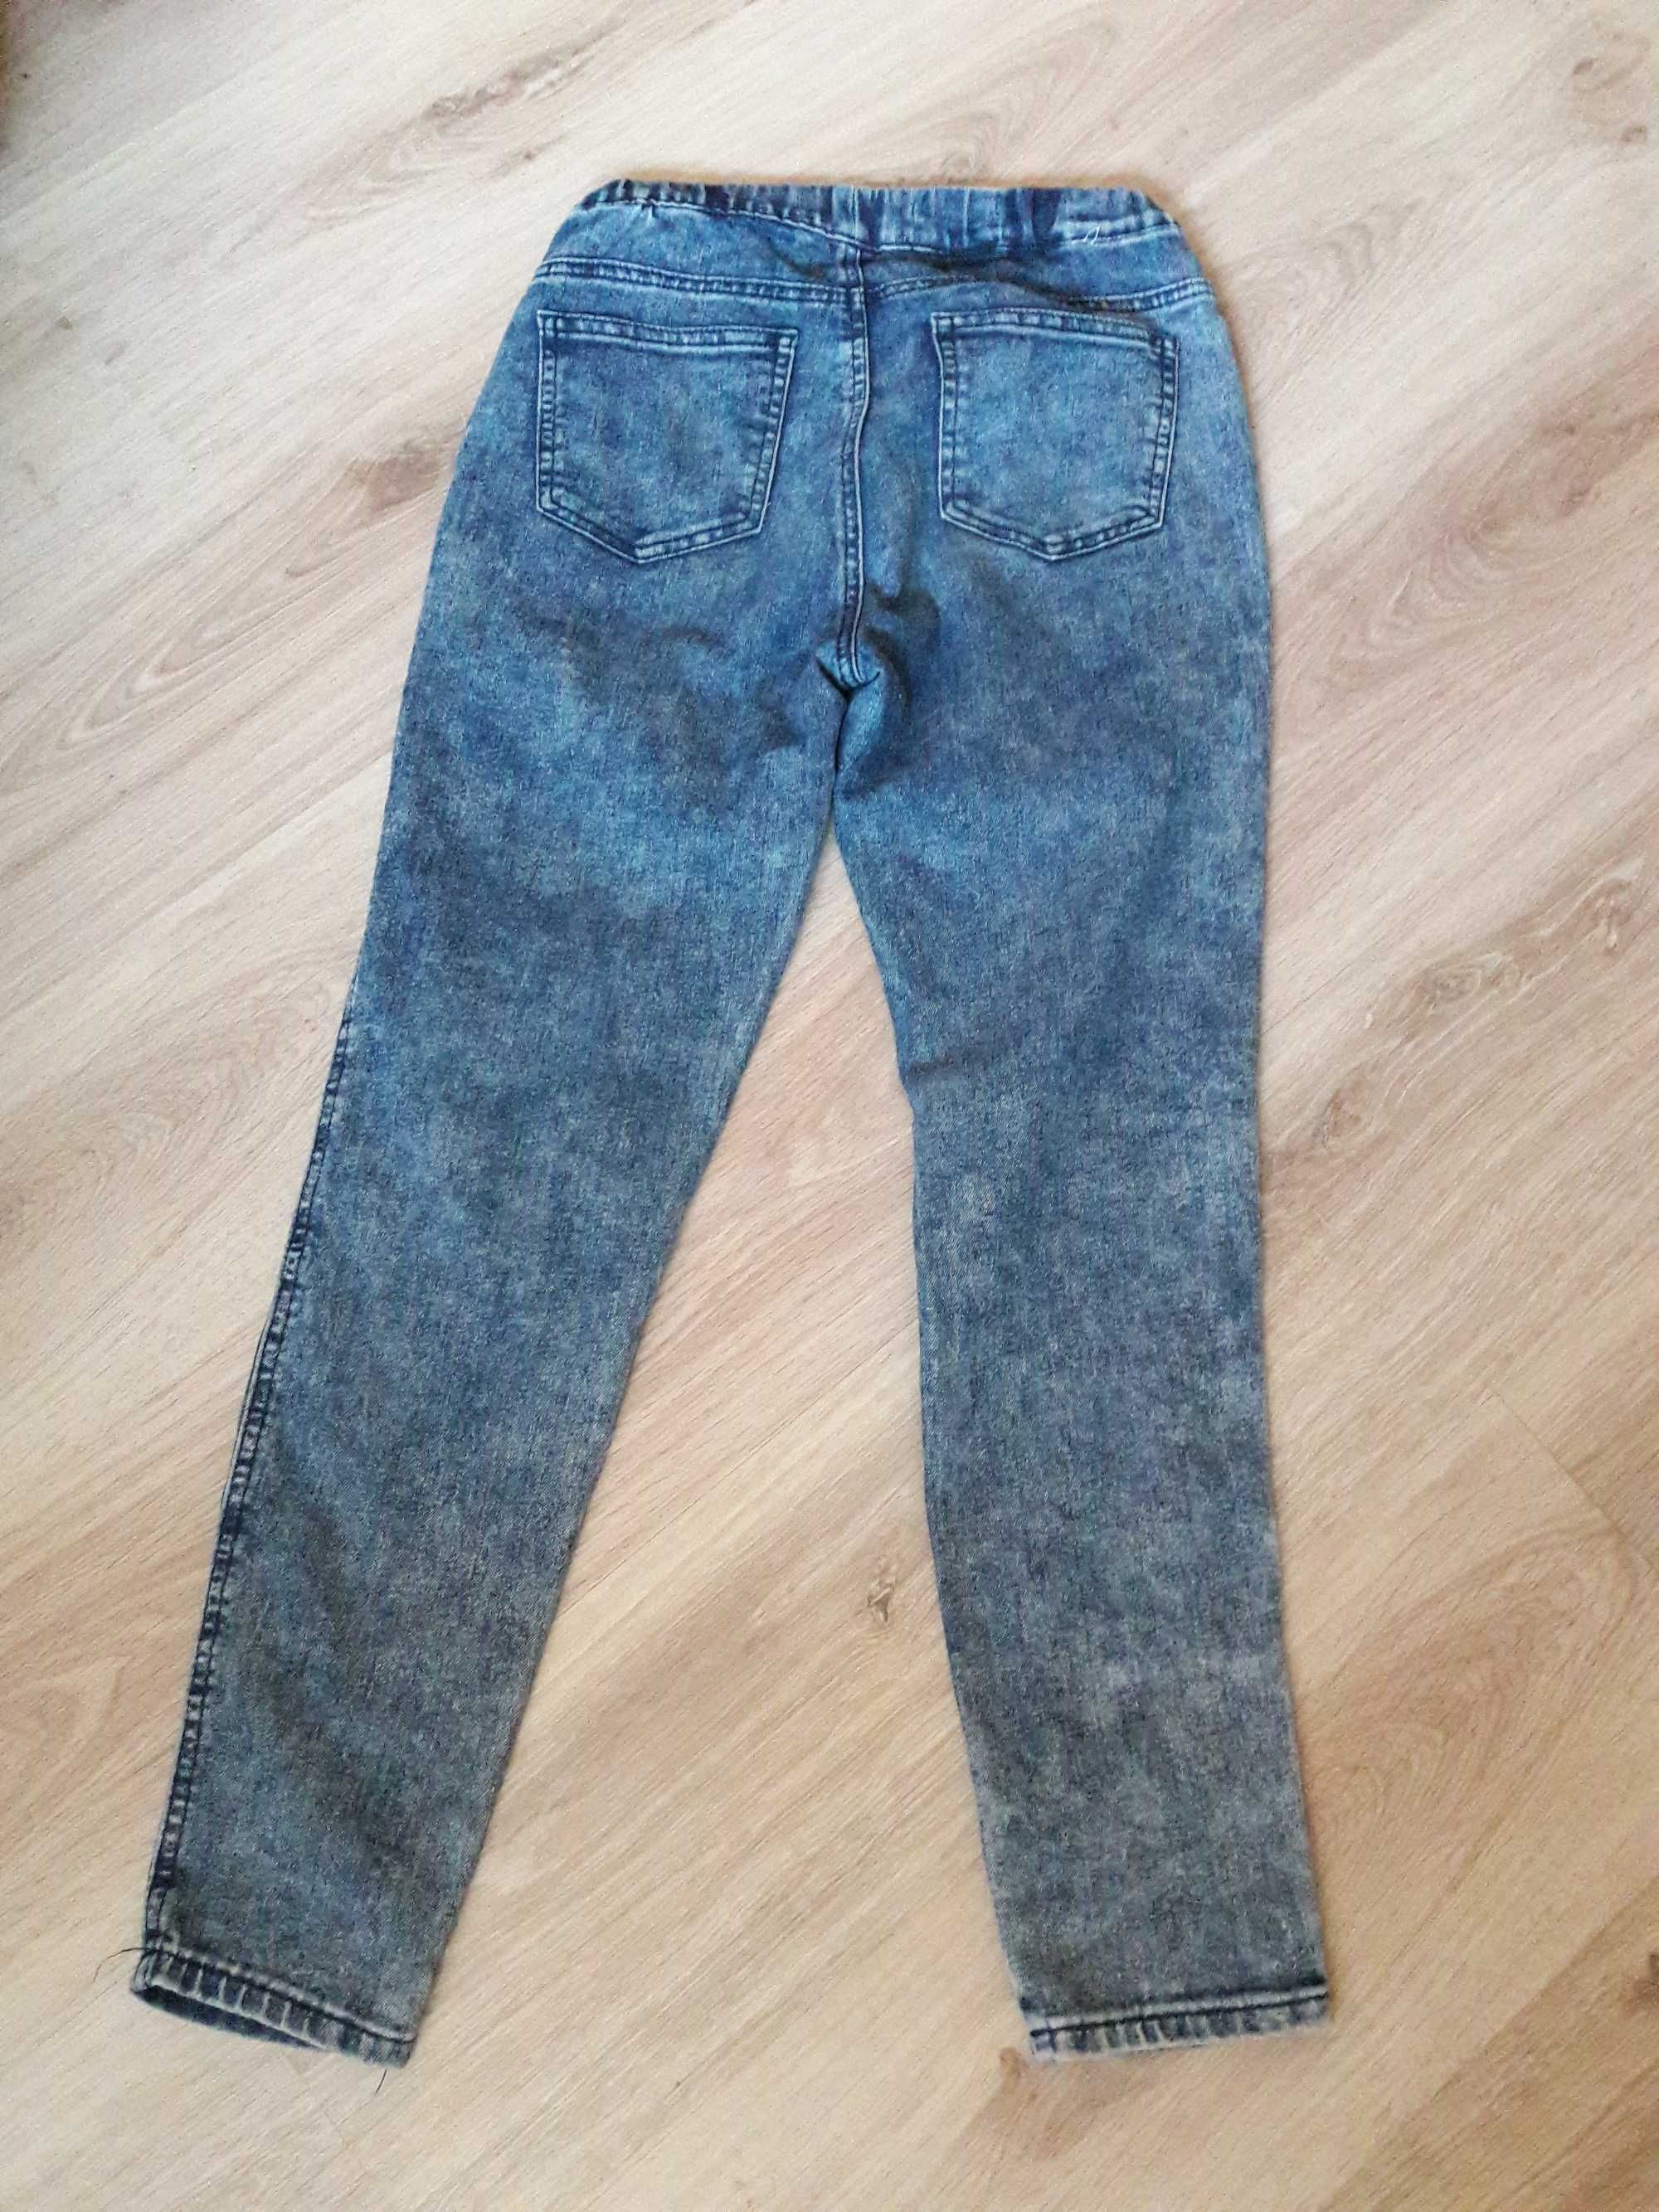 Летние джинсы для девочки 11-12 лет, на резинке